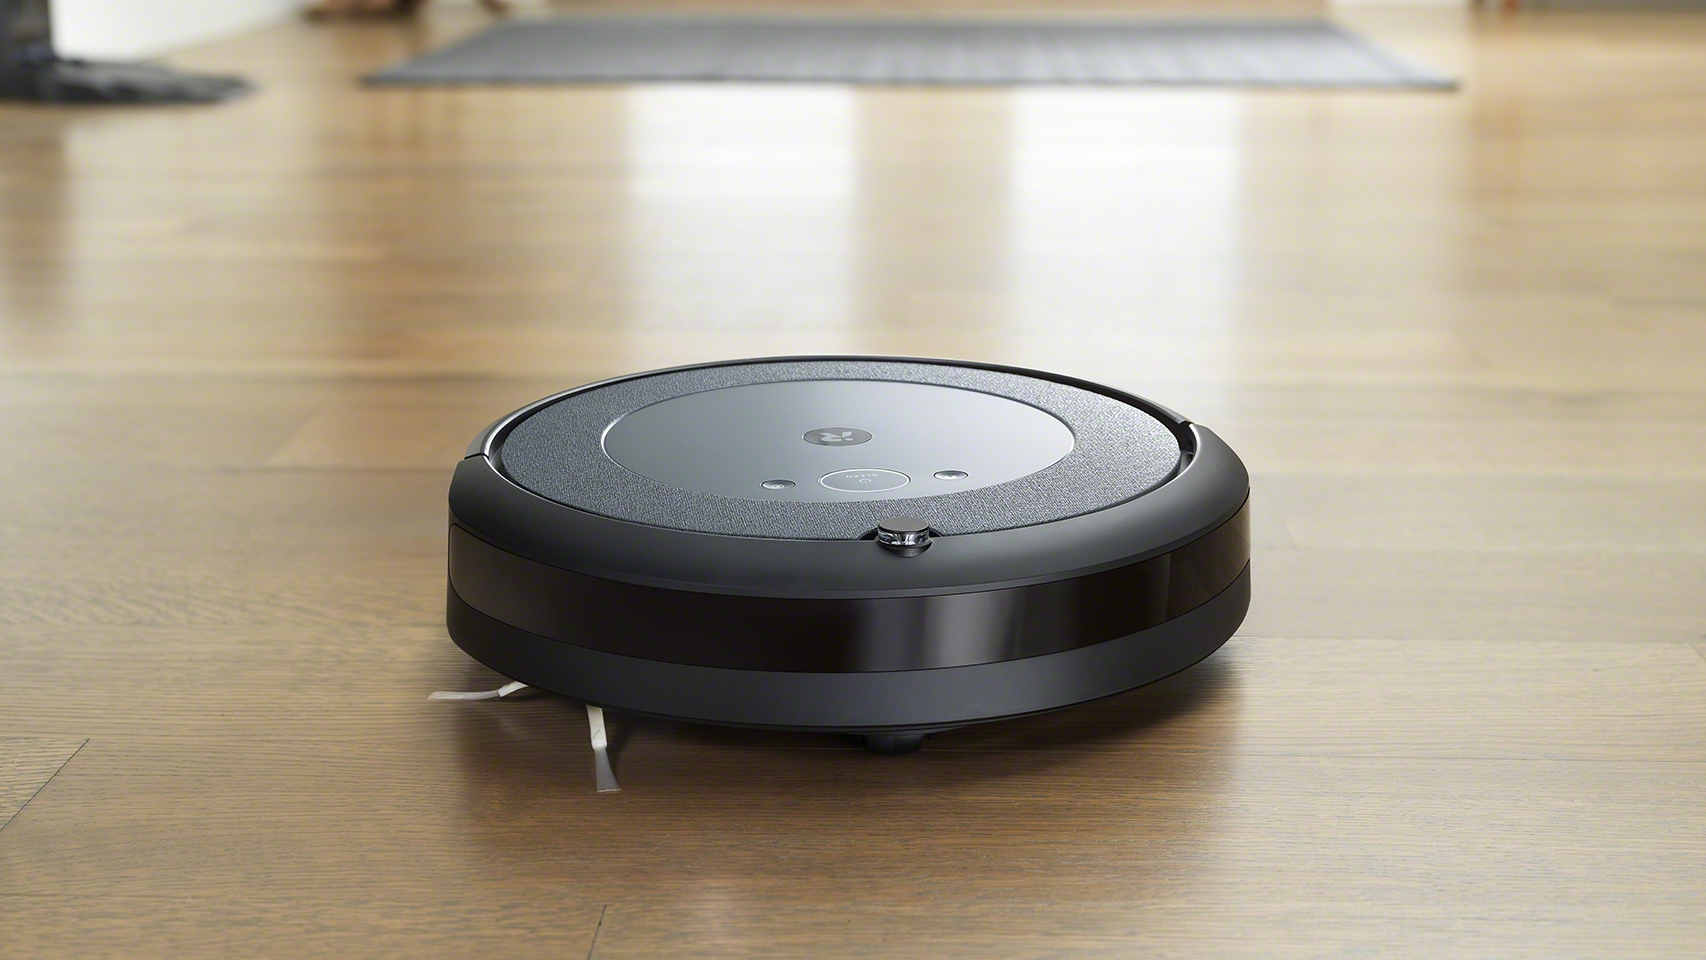 rebaja 300 euros el robot aspirador de Roomba con base de  autovaciado que encanta a los usuarios